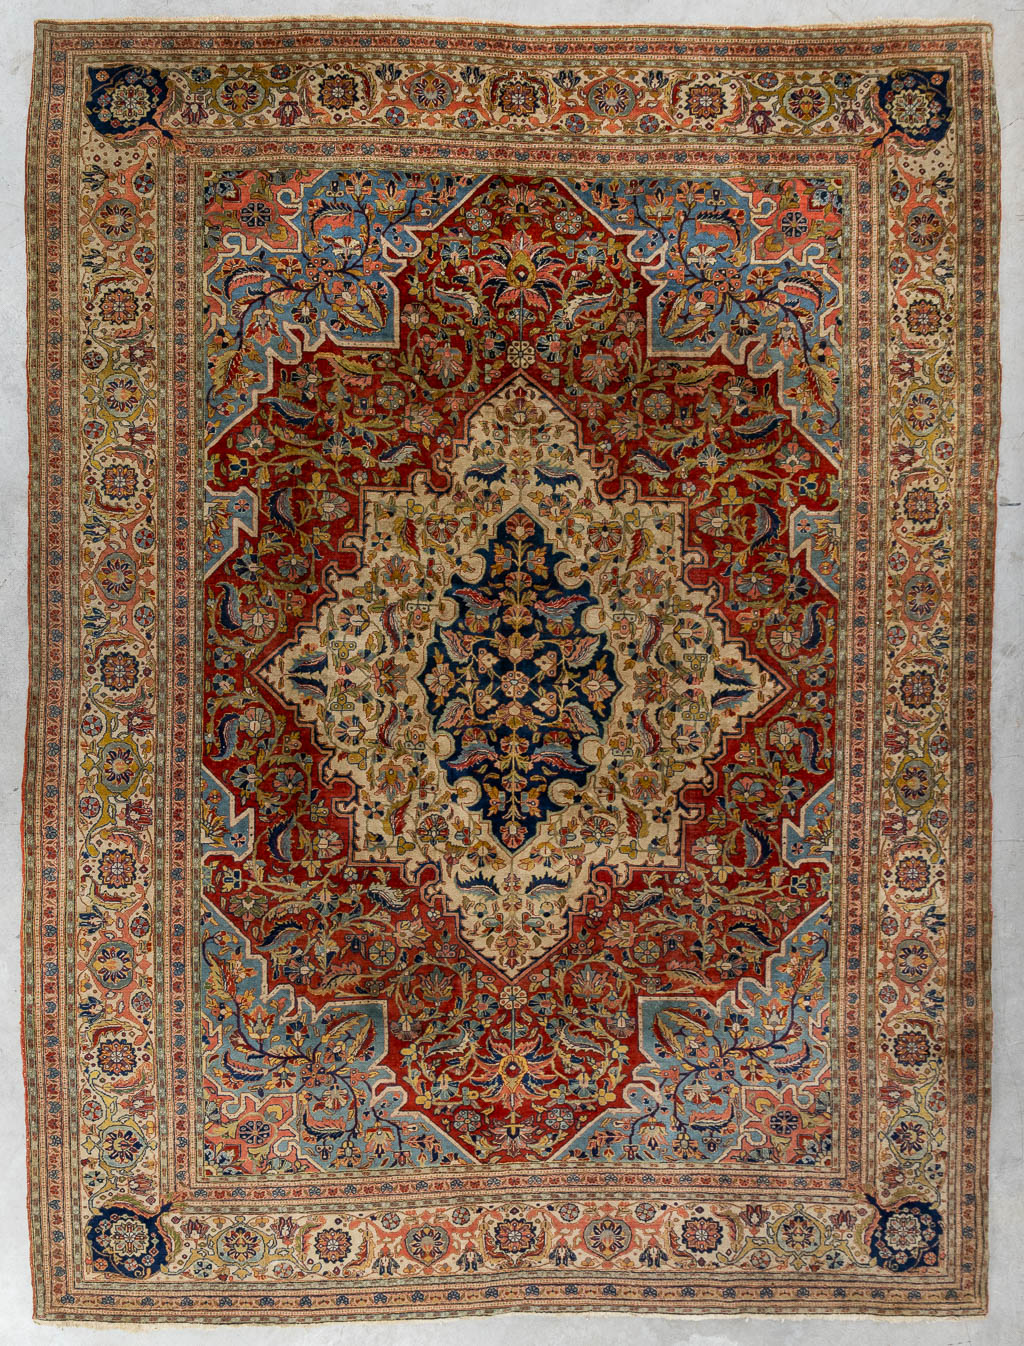 Lot 221 Een Oosters handgeknoopt tapijt, Ghoum. (L:264 x W:353 cm)